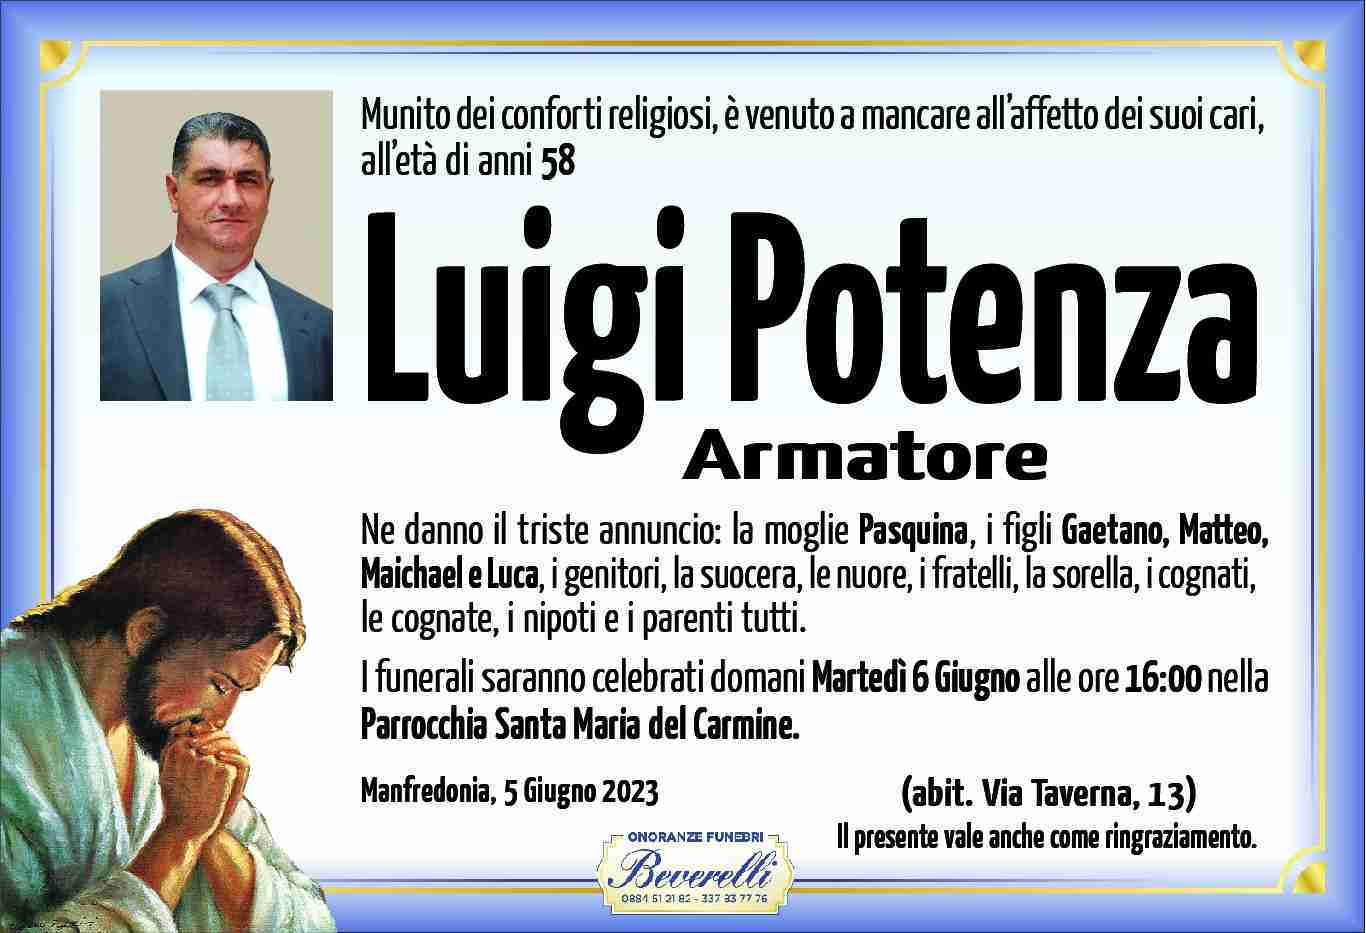 Luigi Potenza